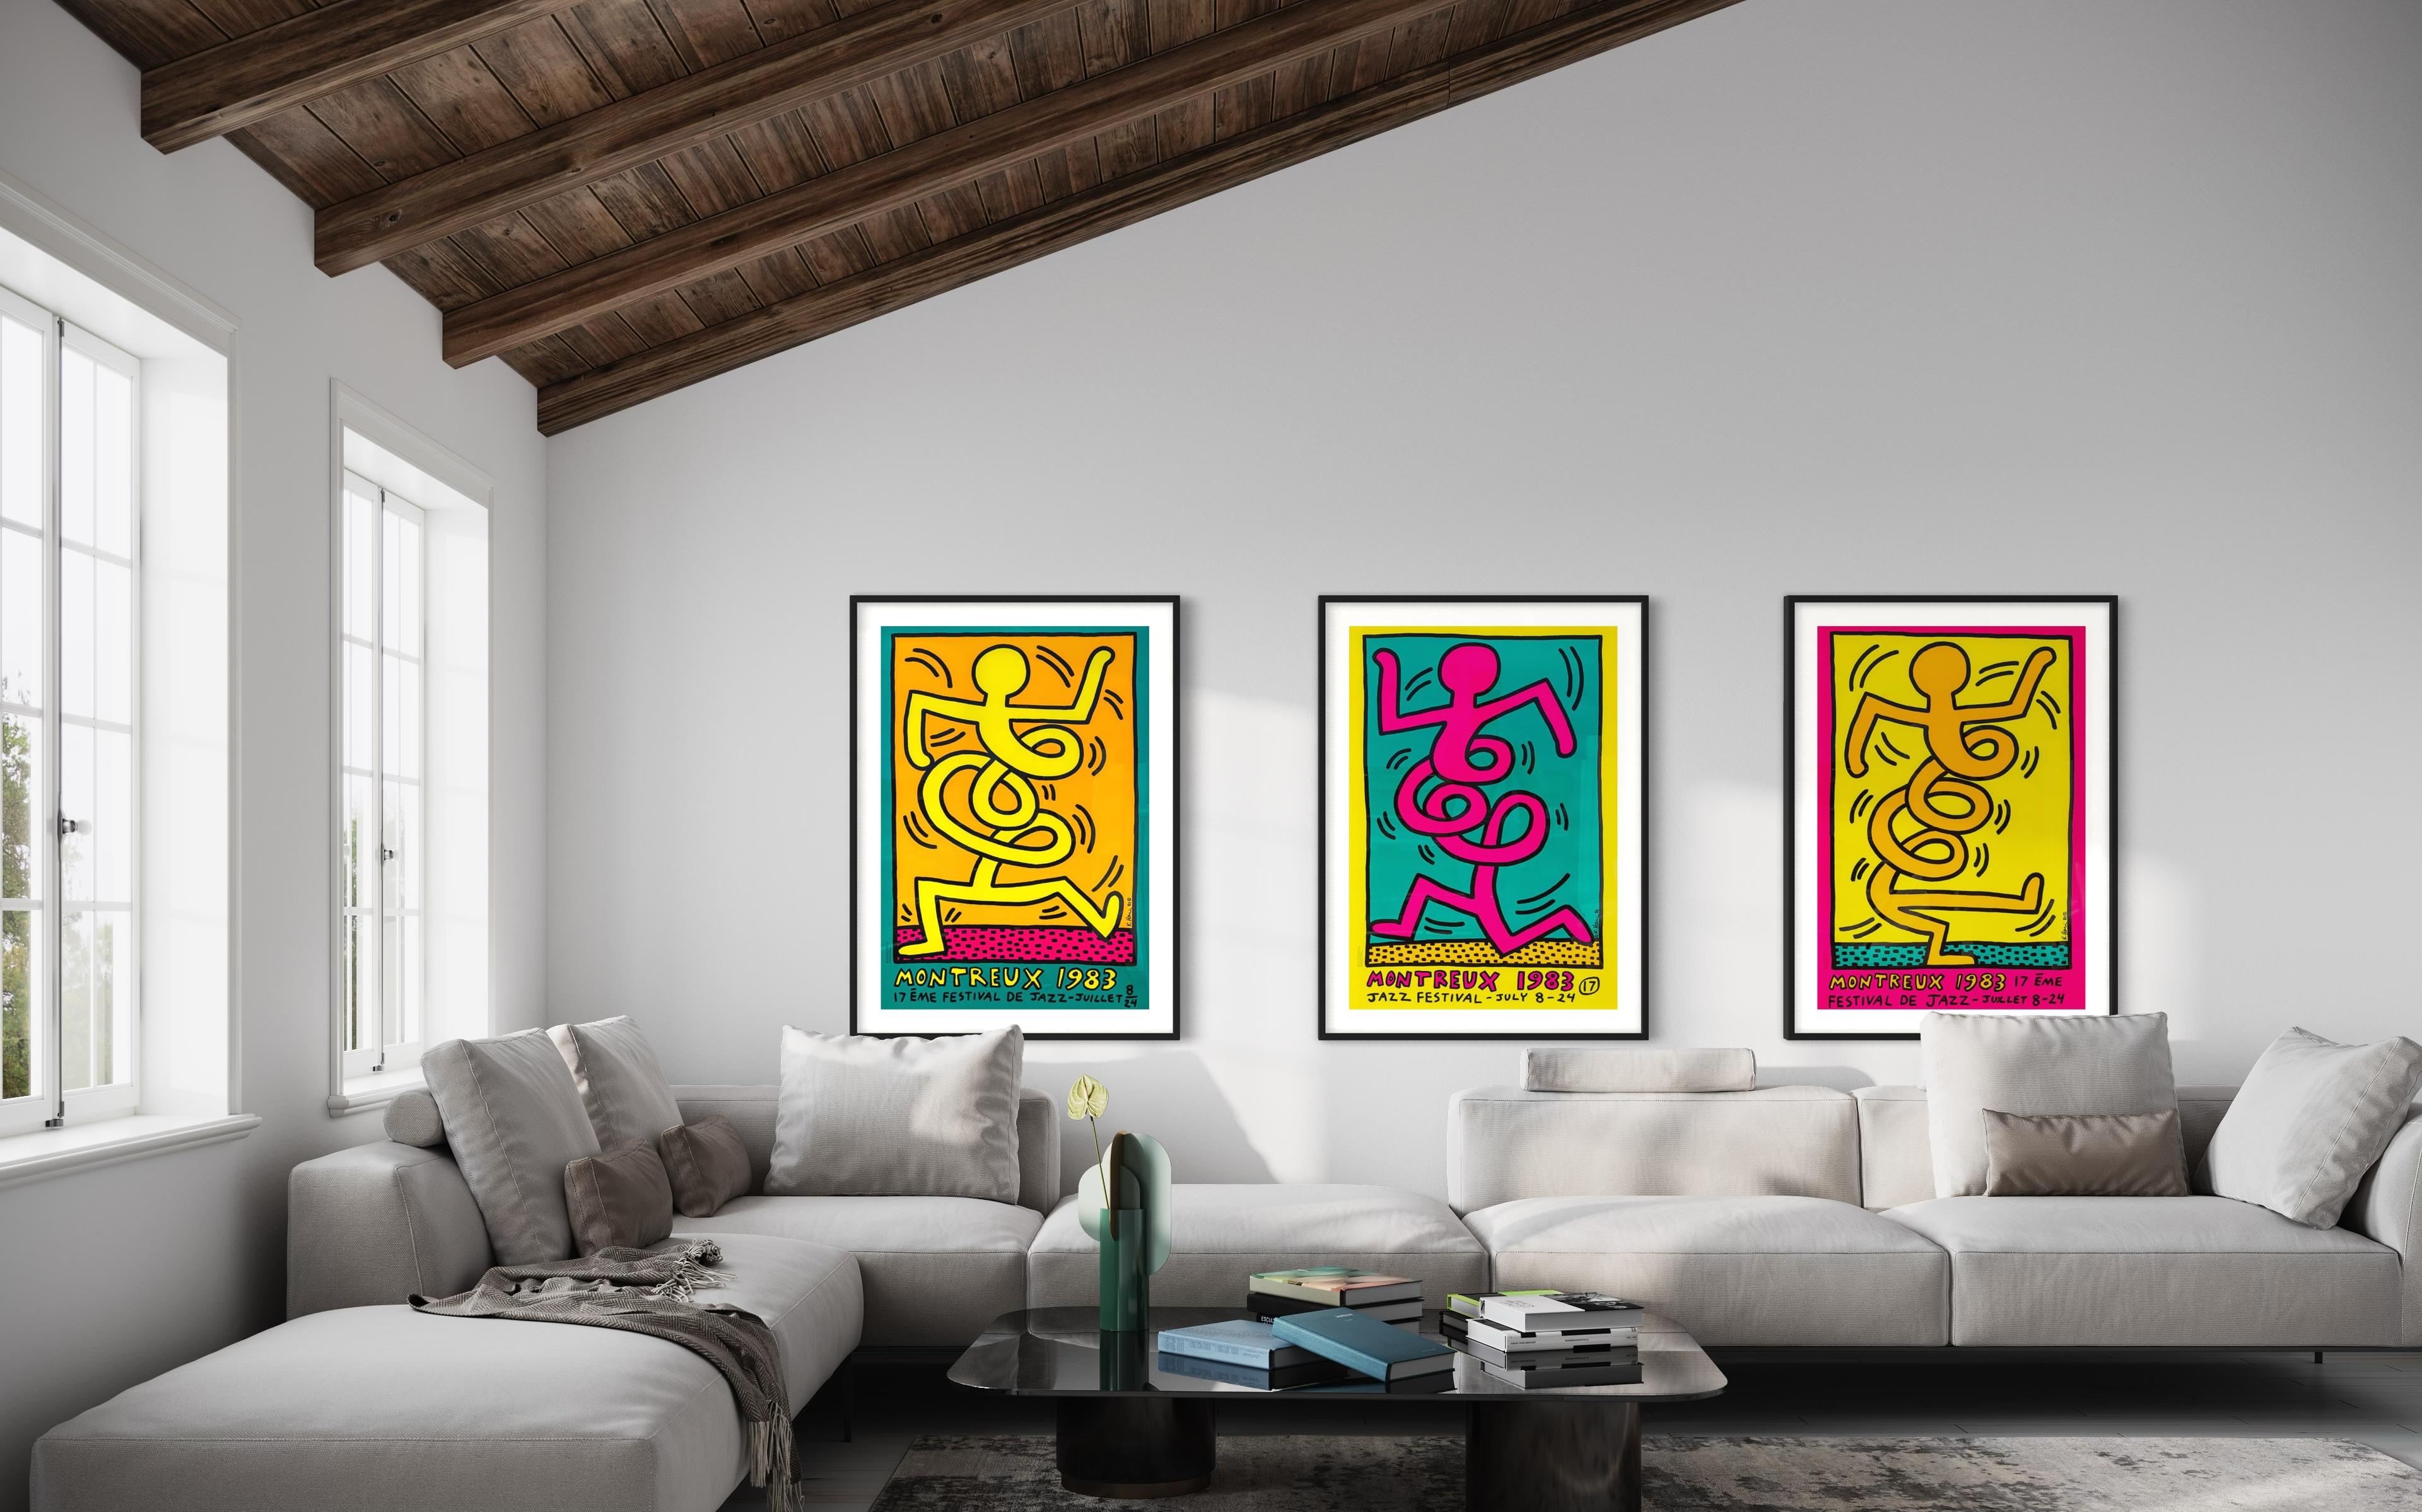 Dies ist ein vollständiger Satz von drei Siebdrucken von Keith Haring. Das erste dieser Plakate wurde 1983 von Keith Haring als offizielles Plakat für das Montreux Jazz Festival gestaltet.
Die erste offizielle Ausstellung der Werke von Keith Haring